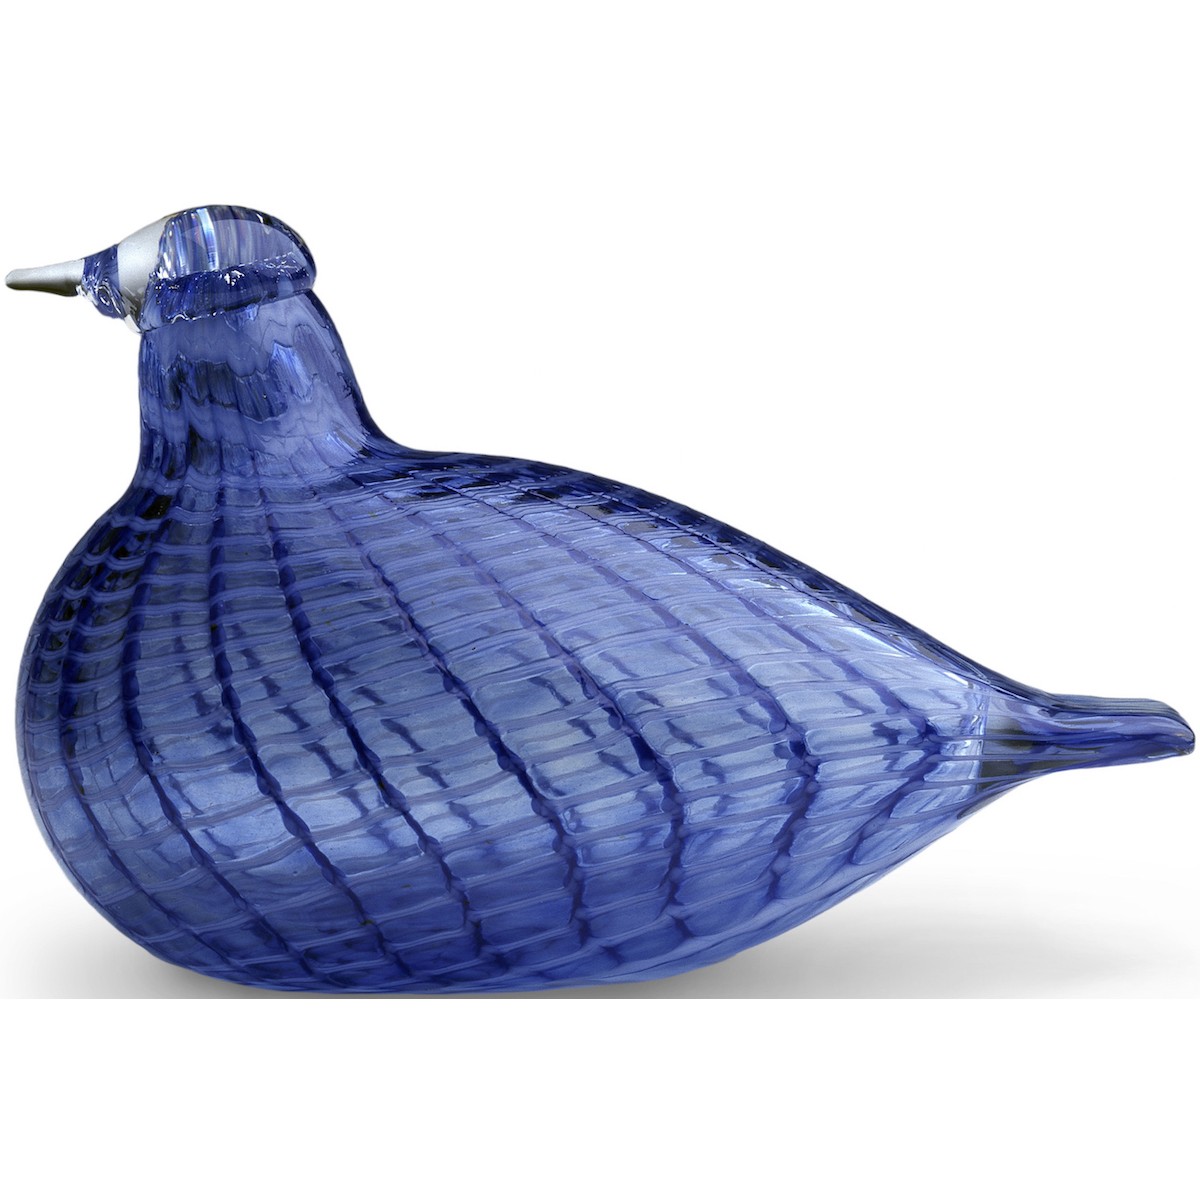 Merle bleu - oiseau Toikka - 1007080